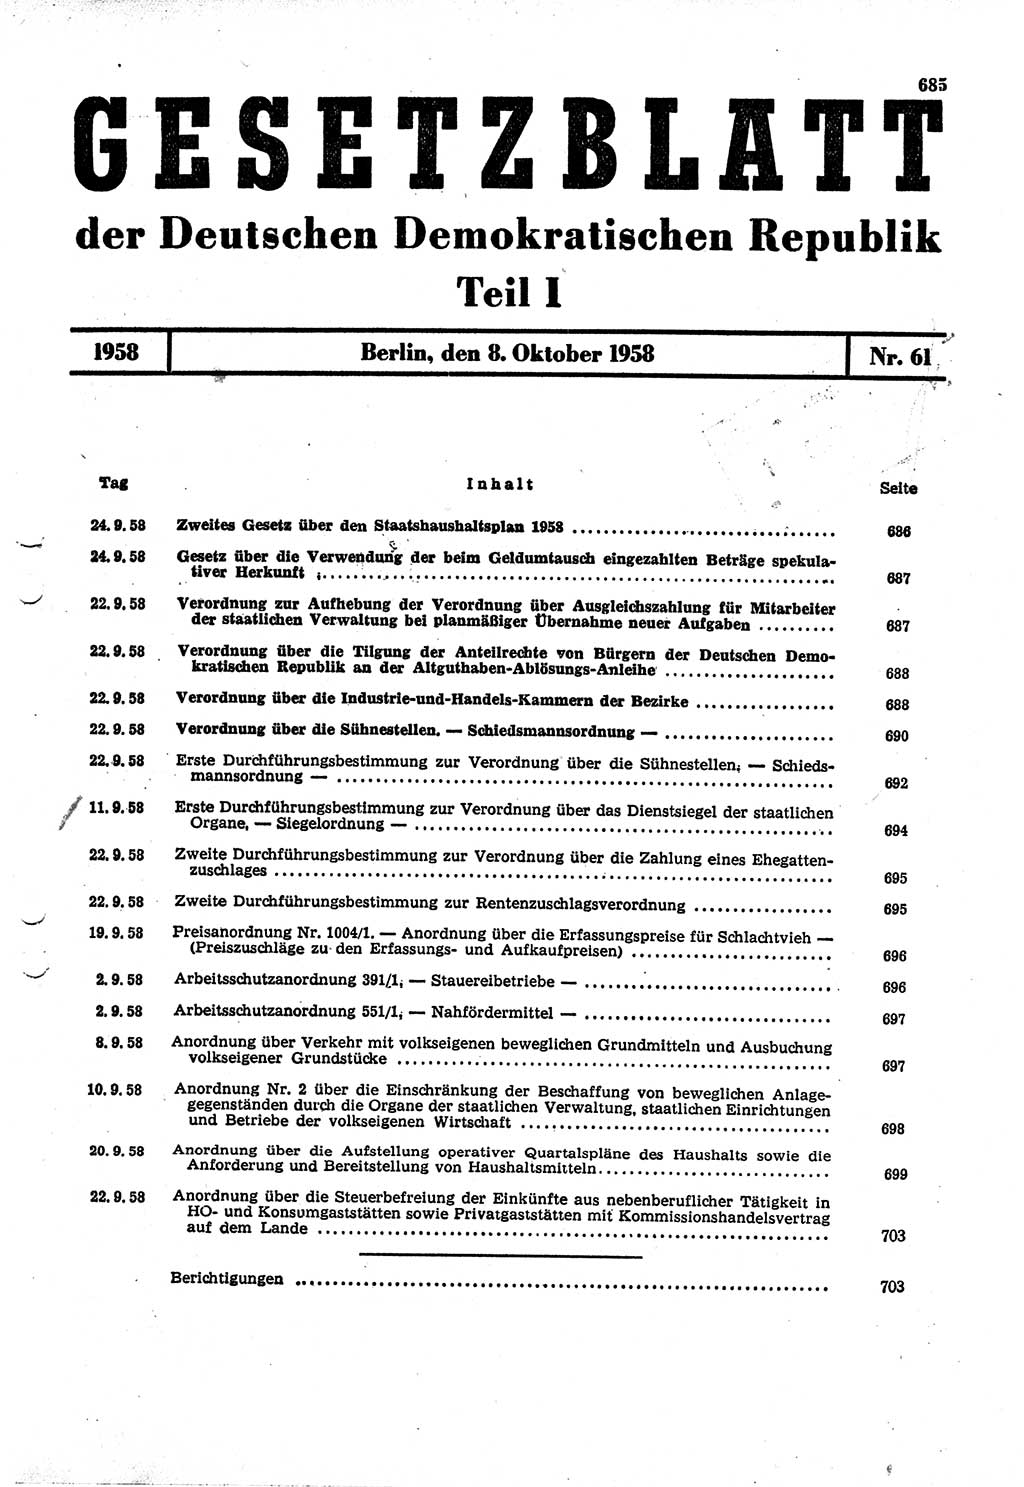 Gesetzblatt (GBl.) der Deutschen Demokratischen Republik (DDR) Teil Ⅰ 1958, Seite 685 (GBl. DDR Ⅰ 1958, S. 685)